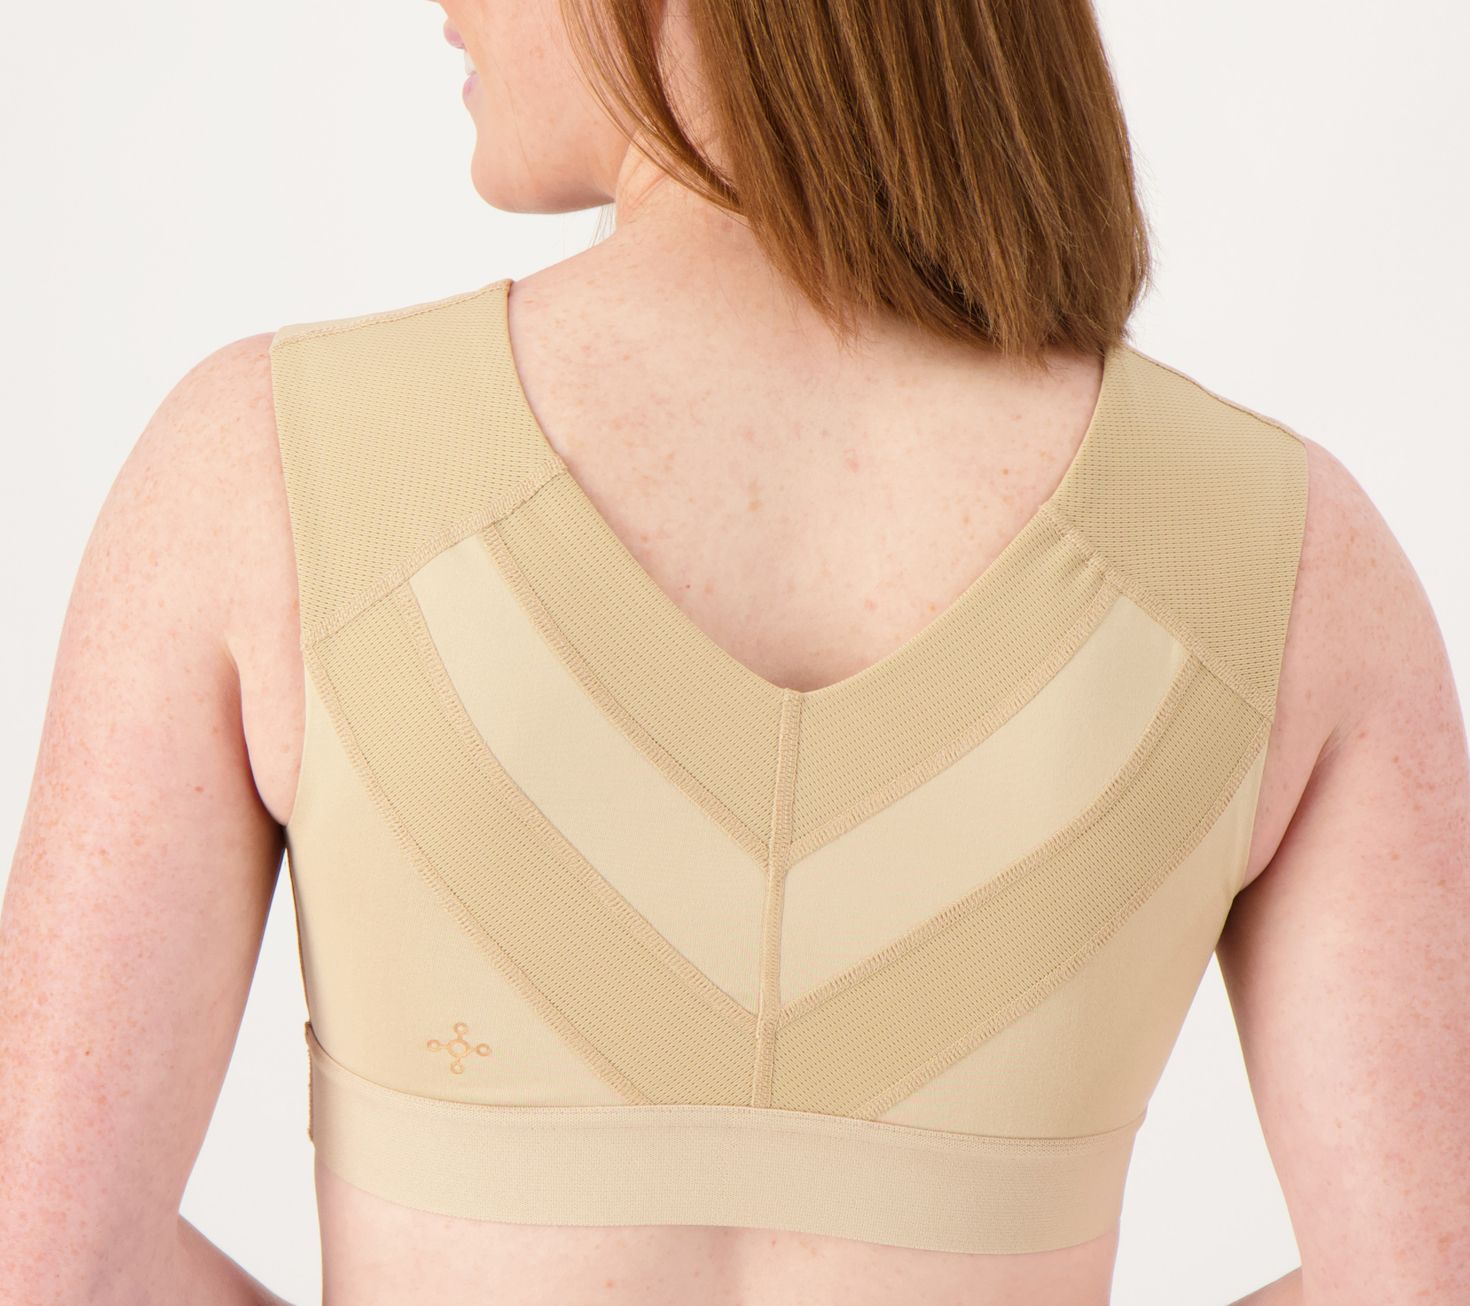 Tommie Copper Pro Grade Short Sleeve Shoulder Upper Back Pain Support Shirt